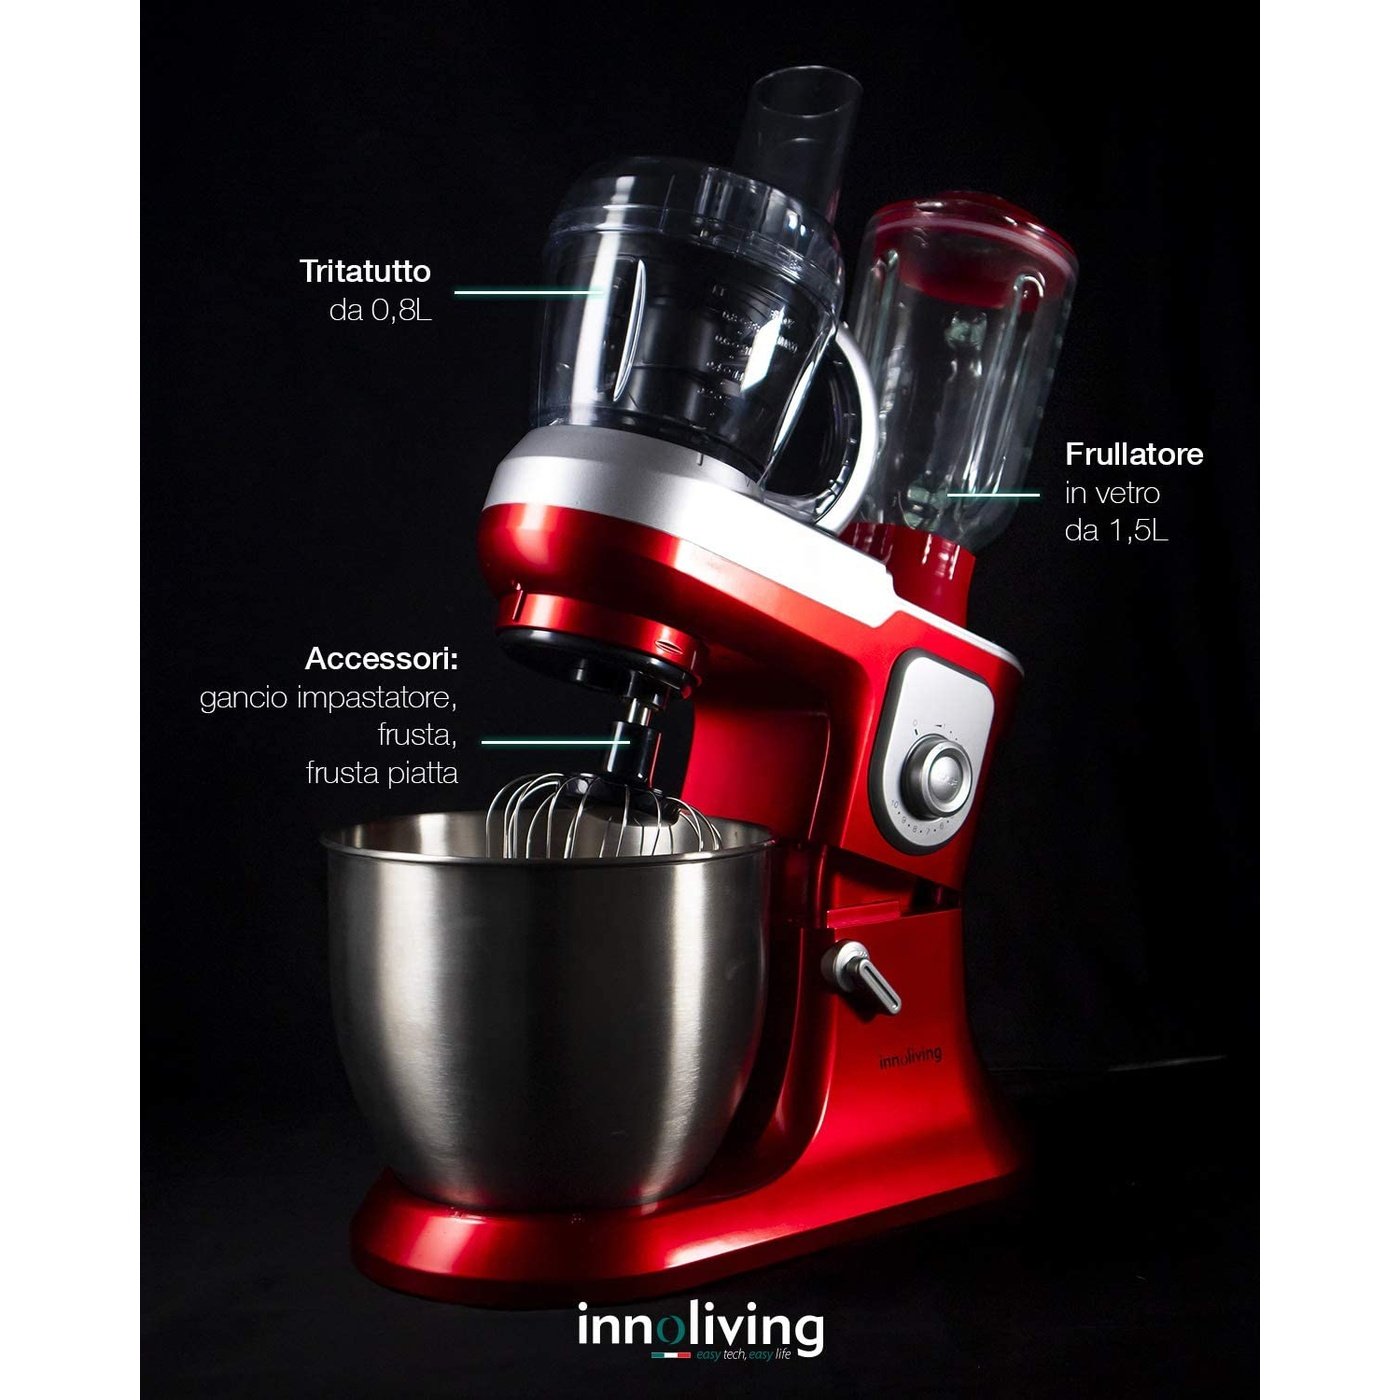 Impastatrice con Frullatore e Robot da Cucina Innoliving INN-721, Rosso 6.5 Litri, 1200 Watt